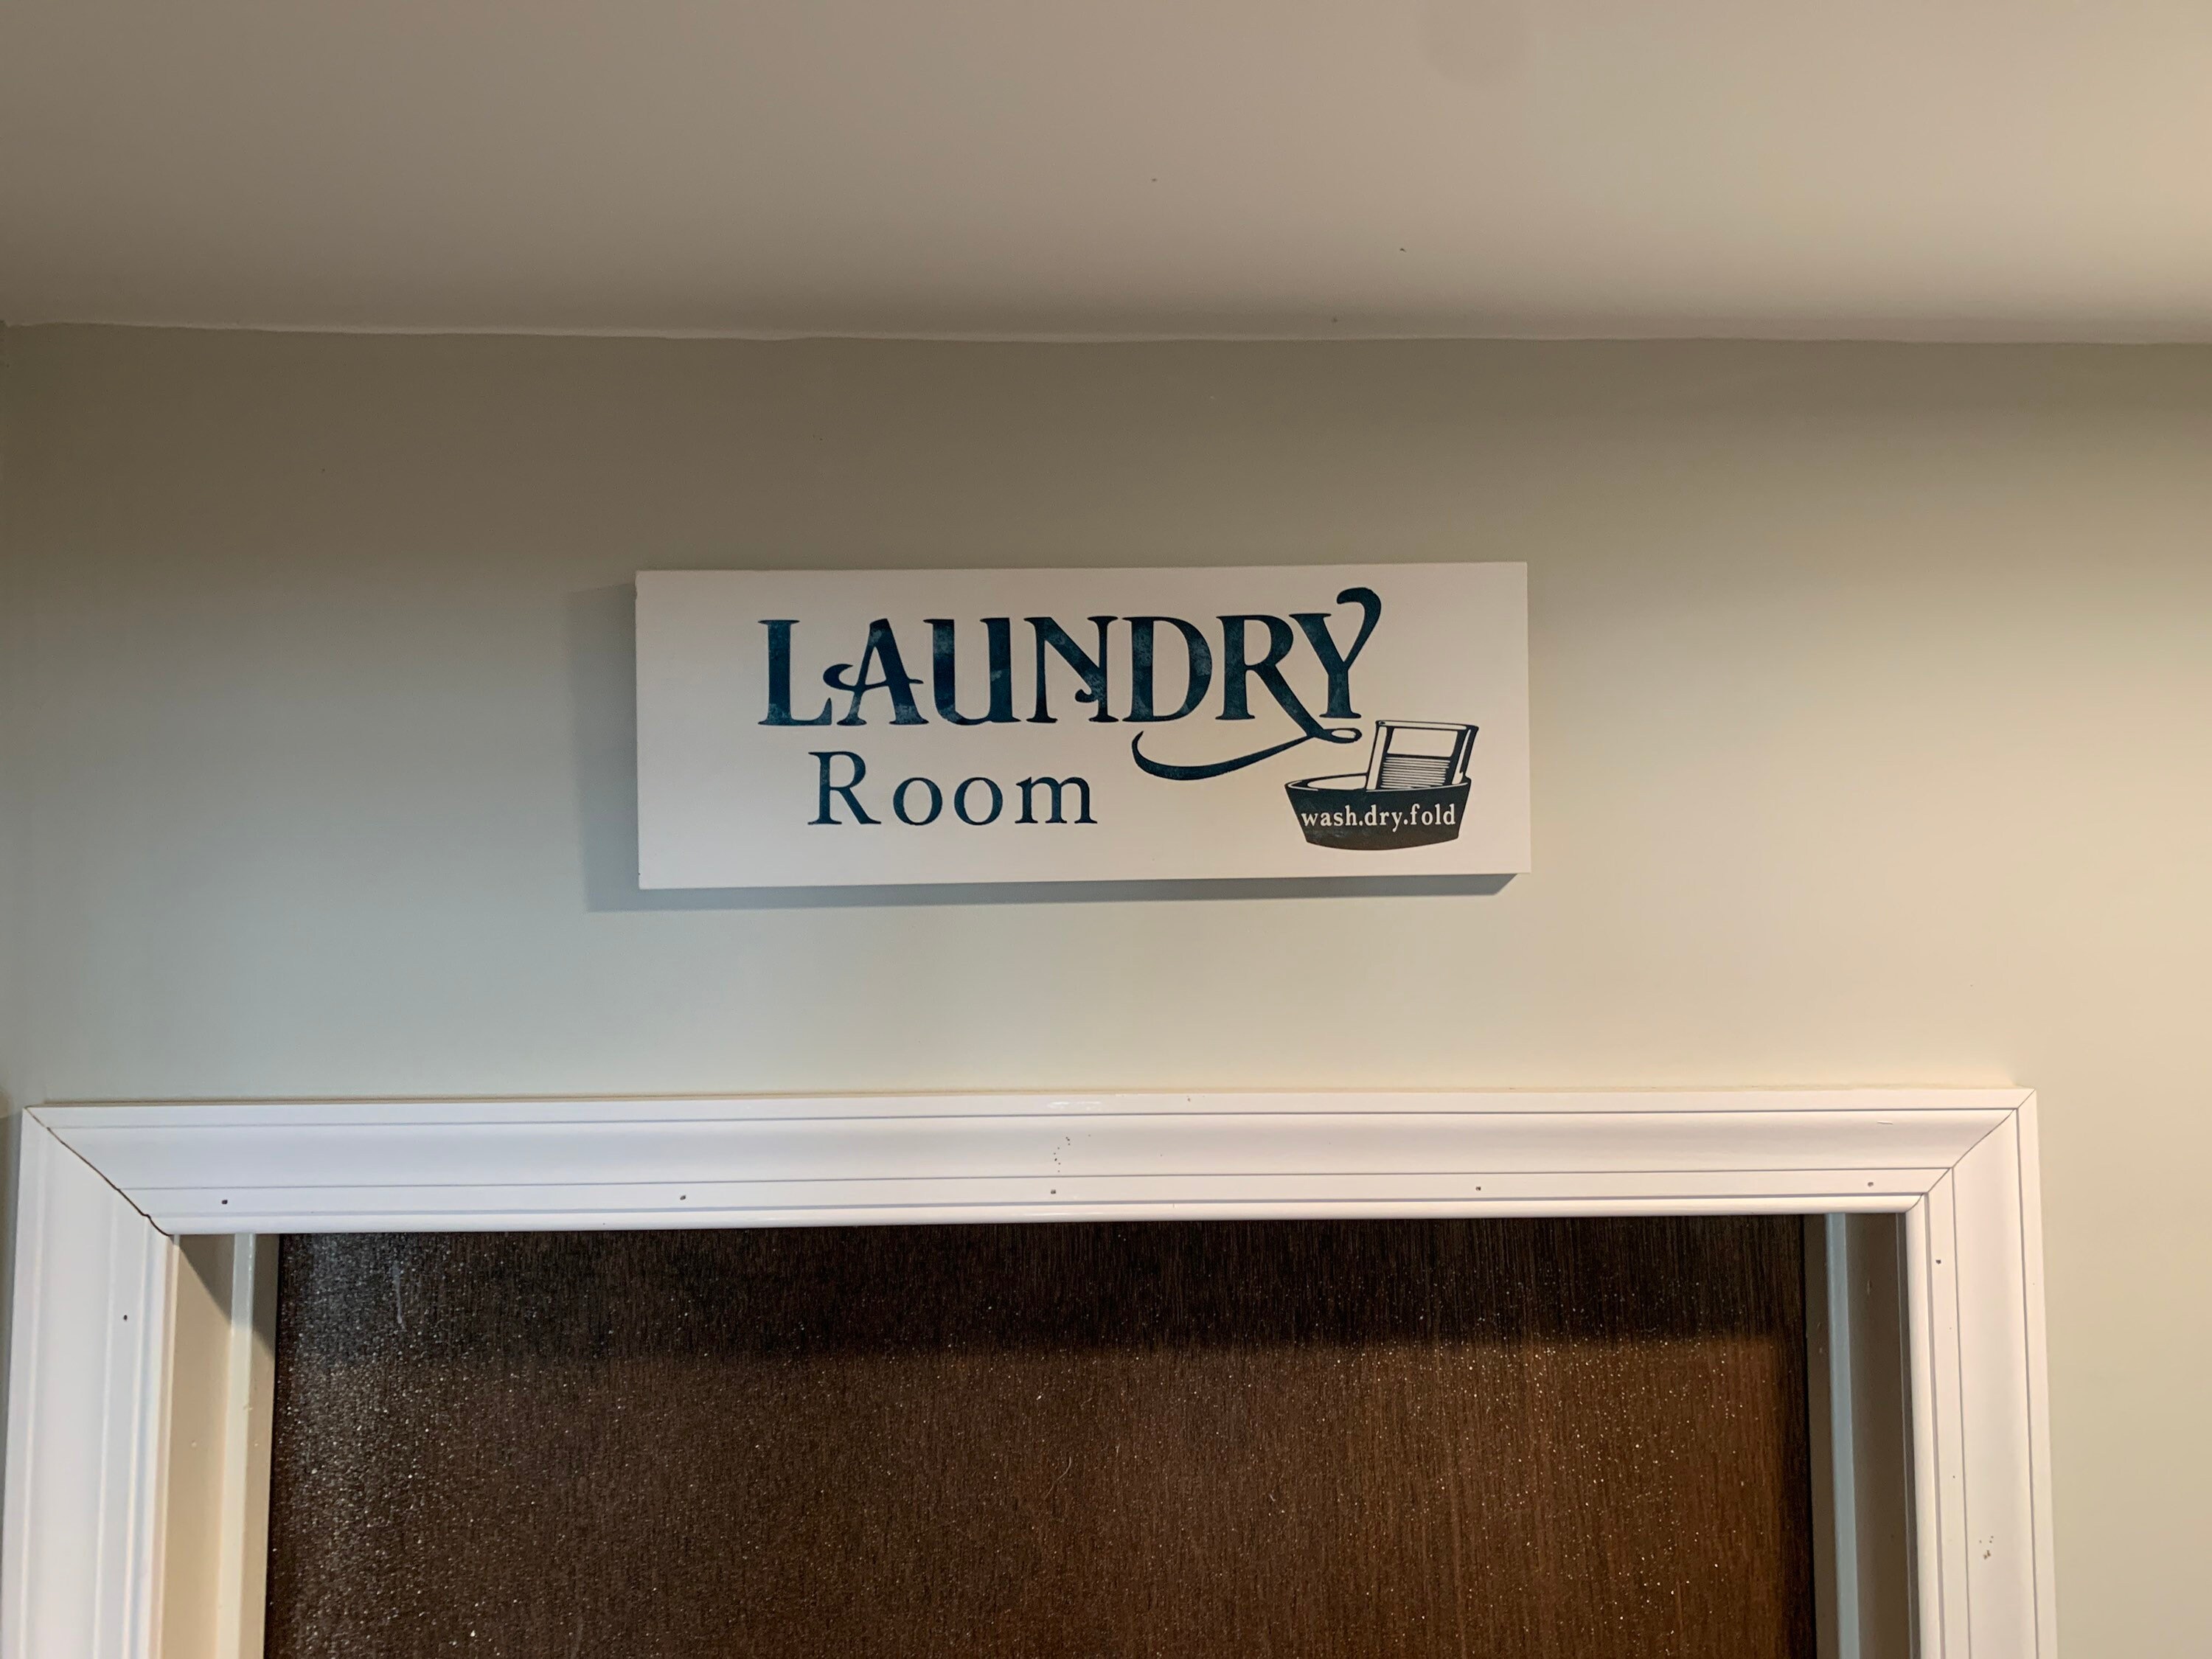 Farmhouse Laundry Room Sign Etsy